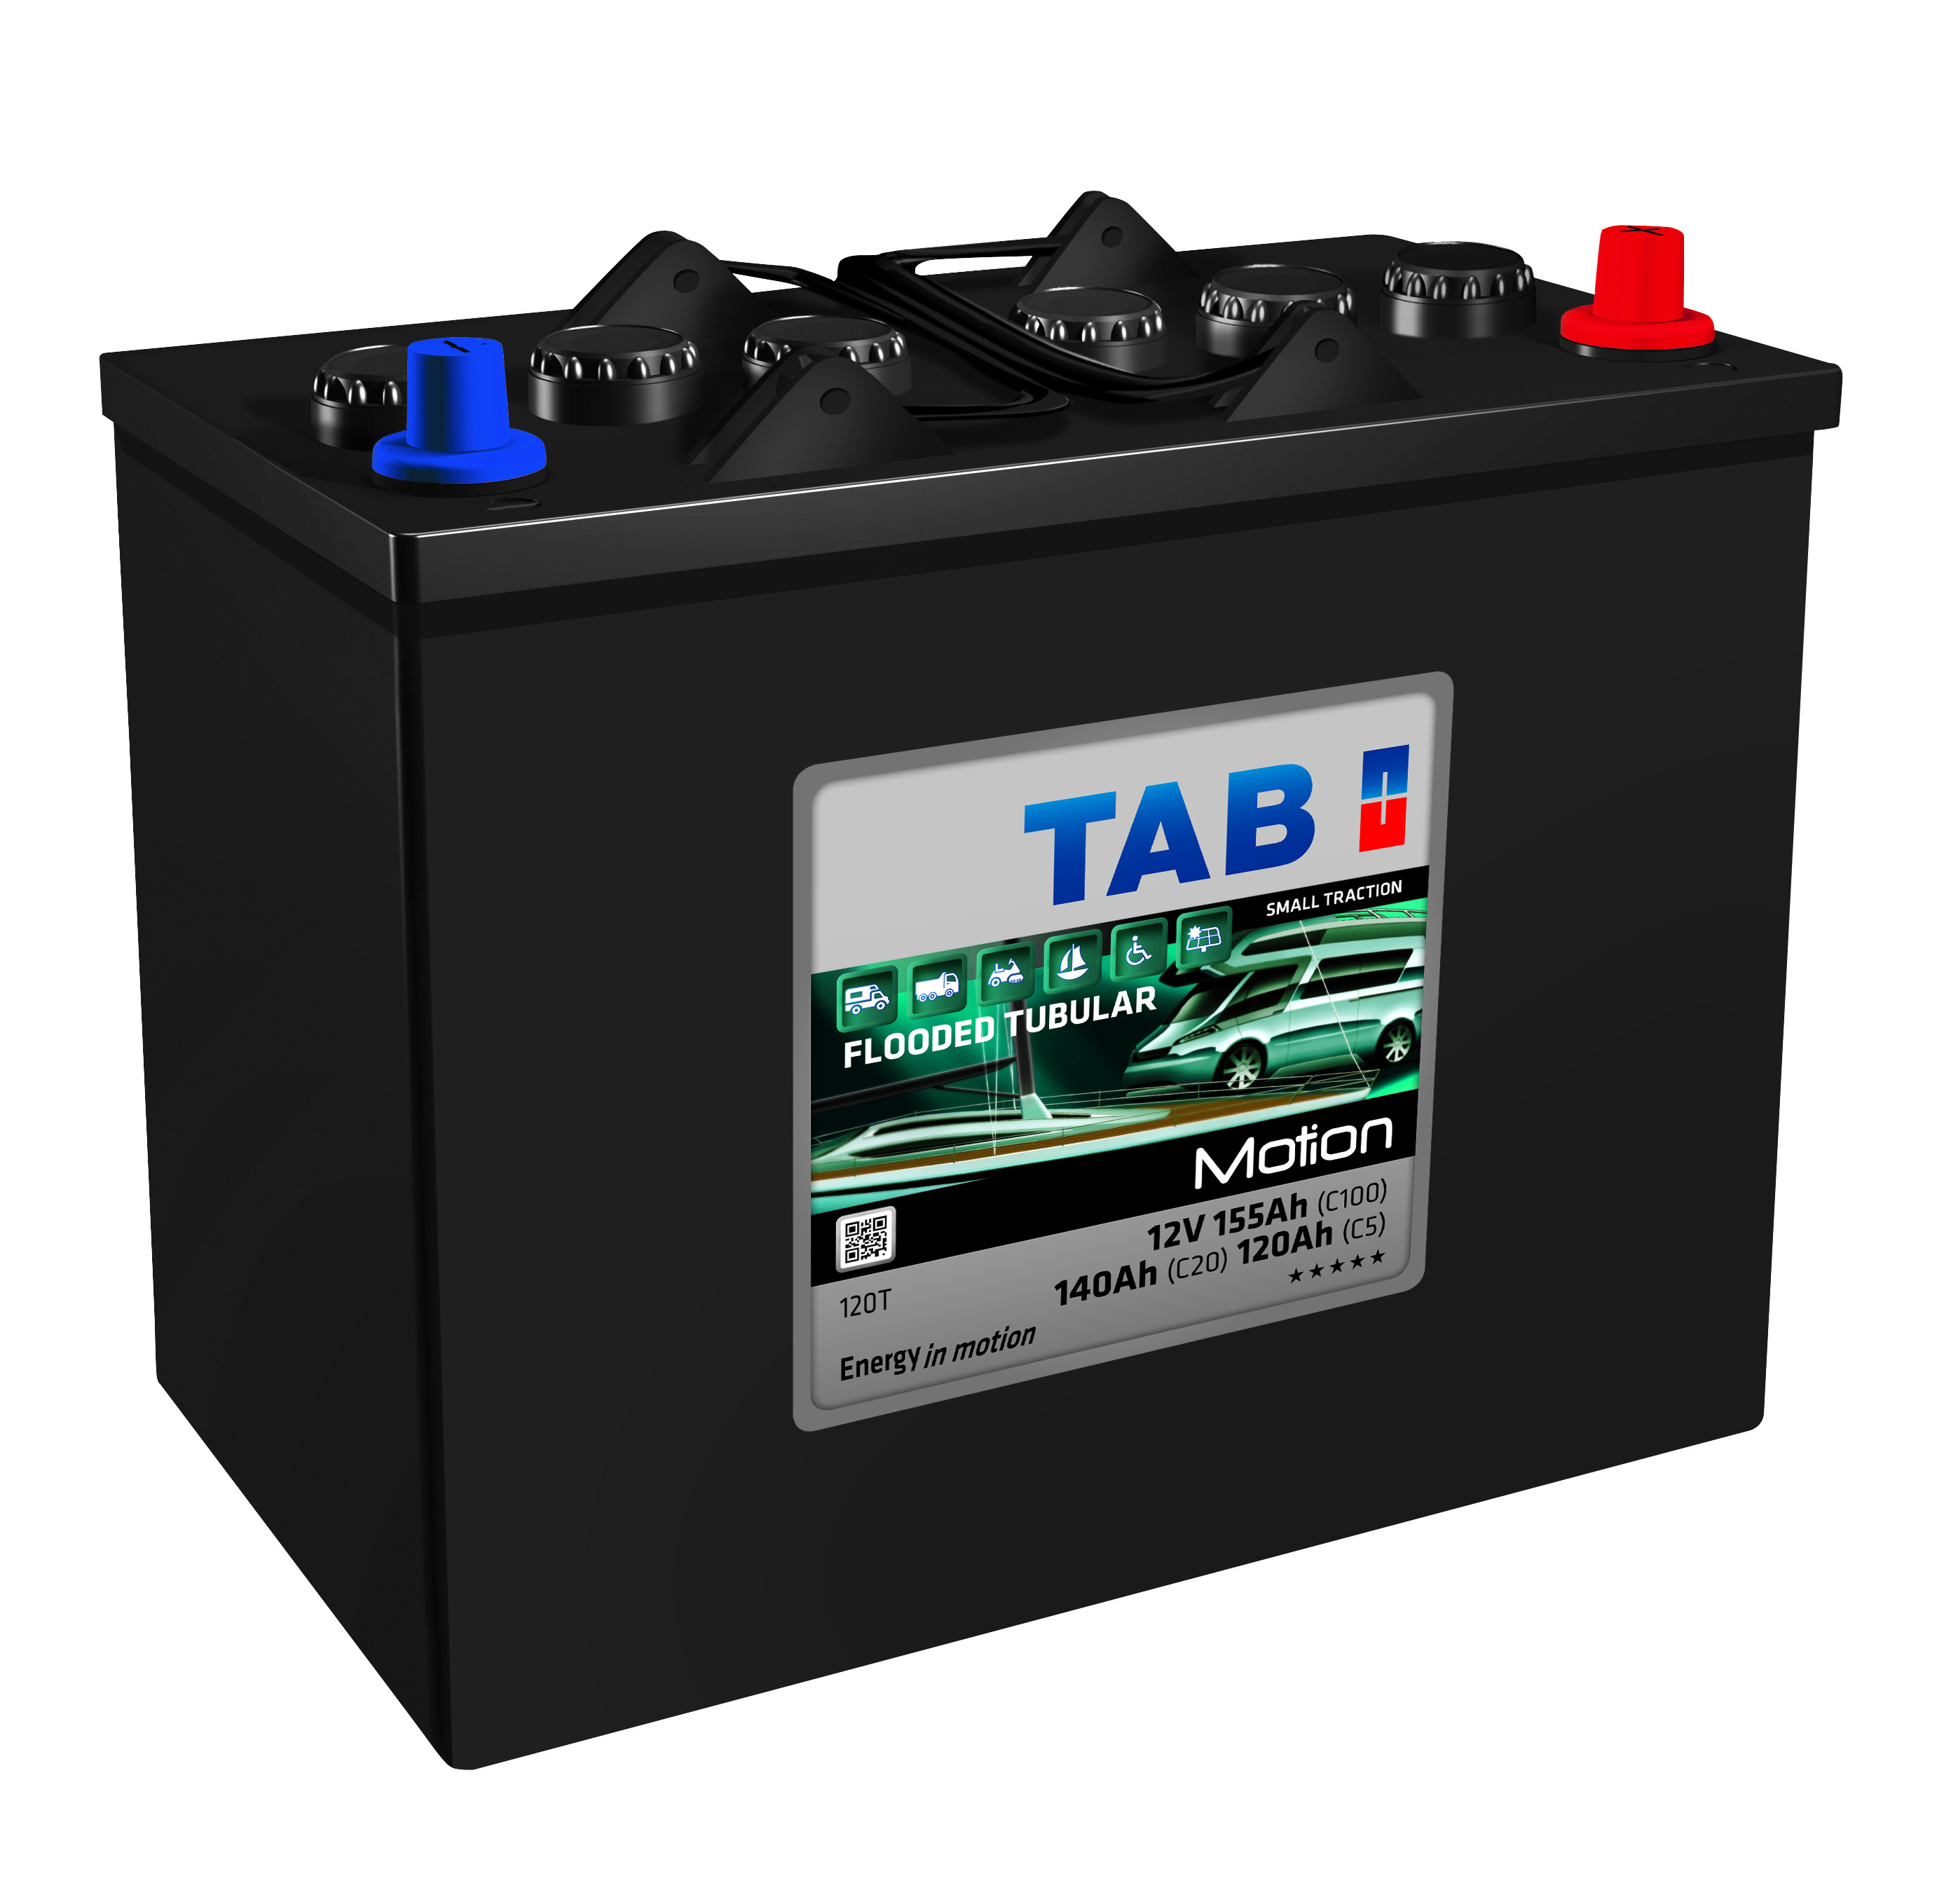 TAB driftsbatteri BLY/SYRE 12v 140ah +h